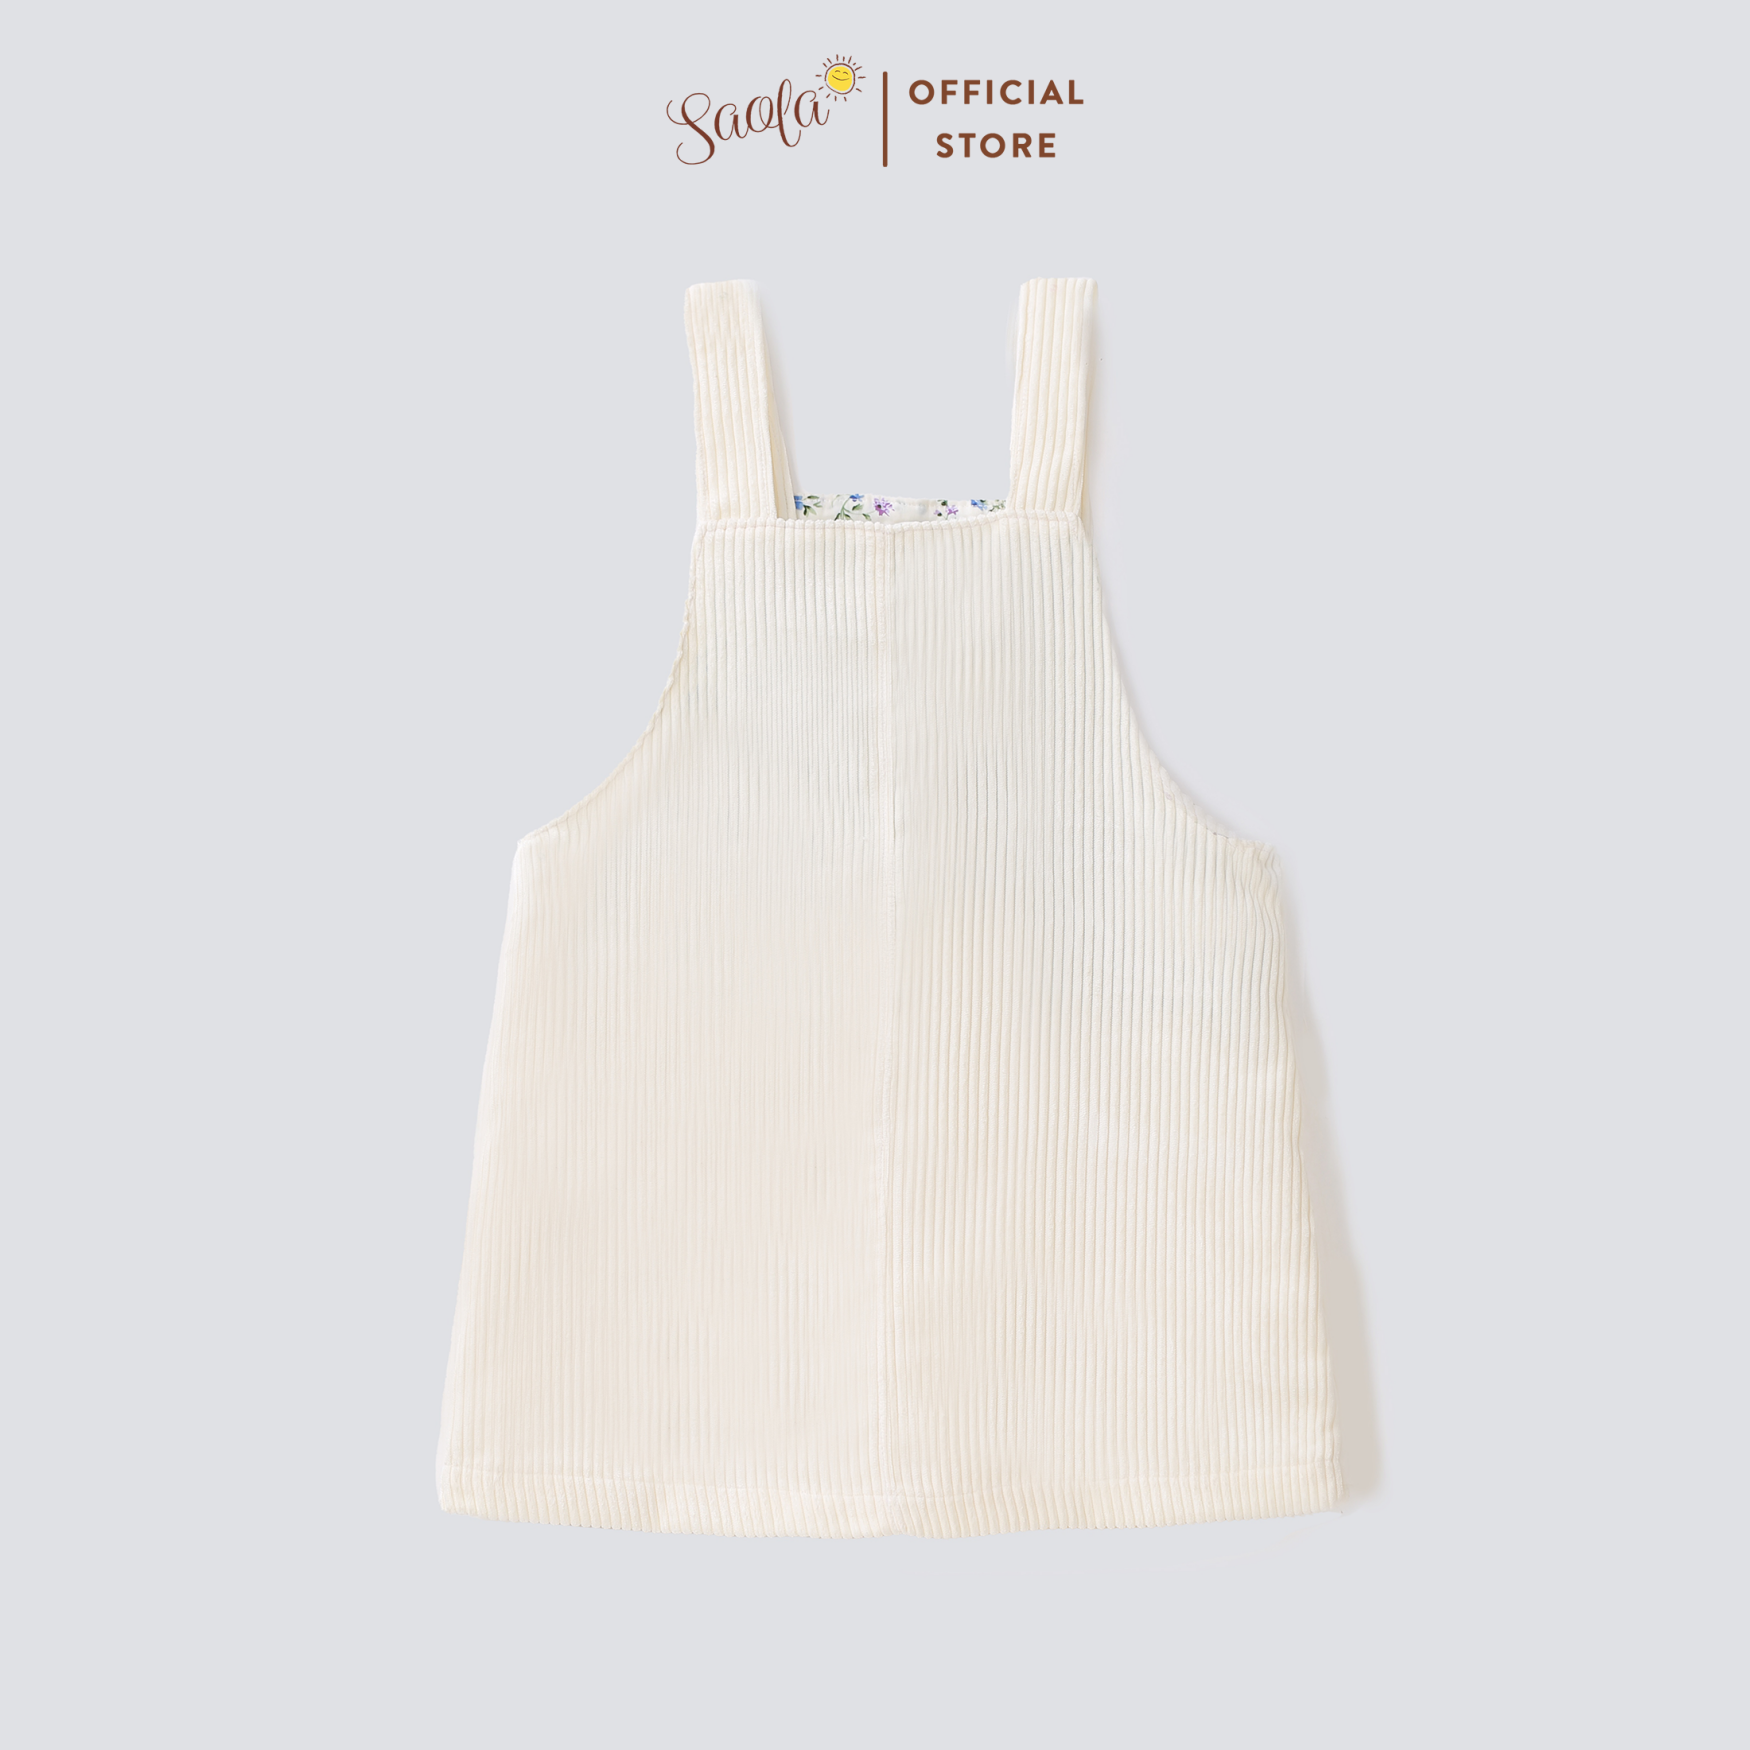 Váy Yếm Bé Gái Chất Liệu Vải Nhung Tăm Cao Cấp - CHLOE PINAFORE DRESS - SCD004 - SAOLA KIDS CLOTHING